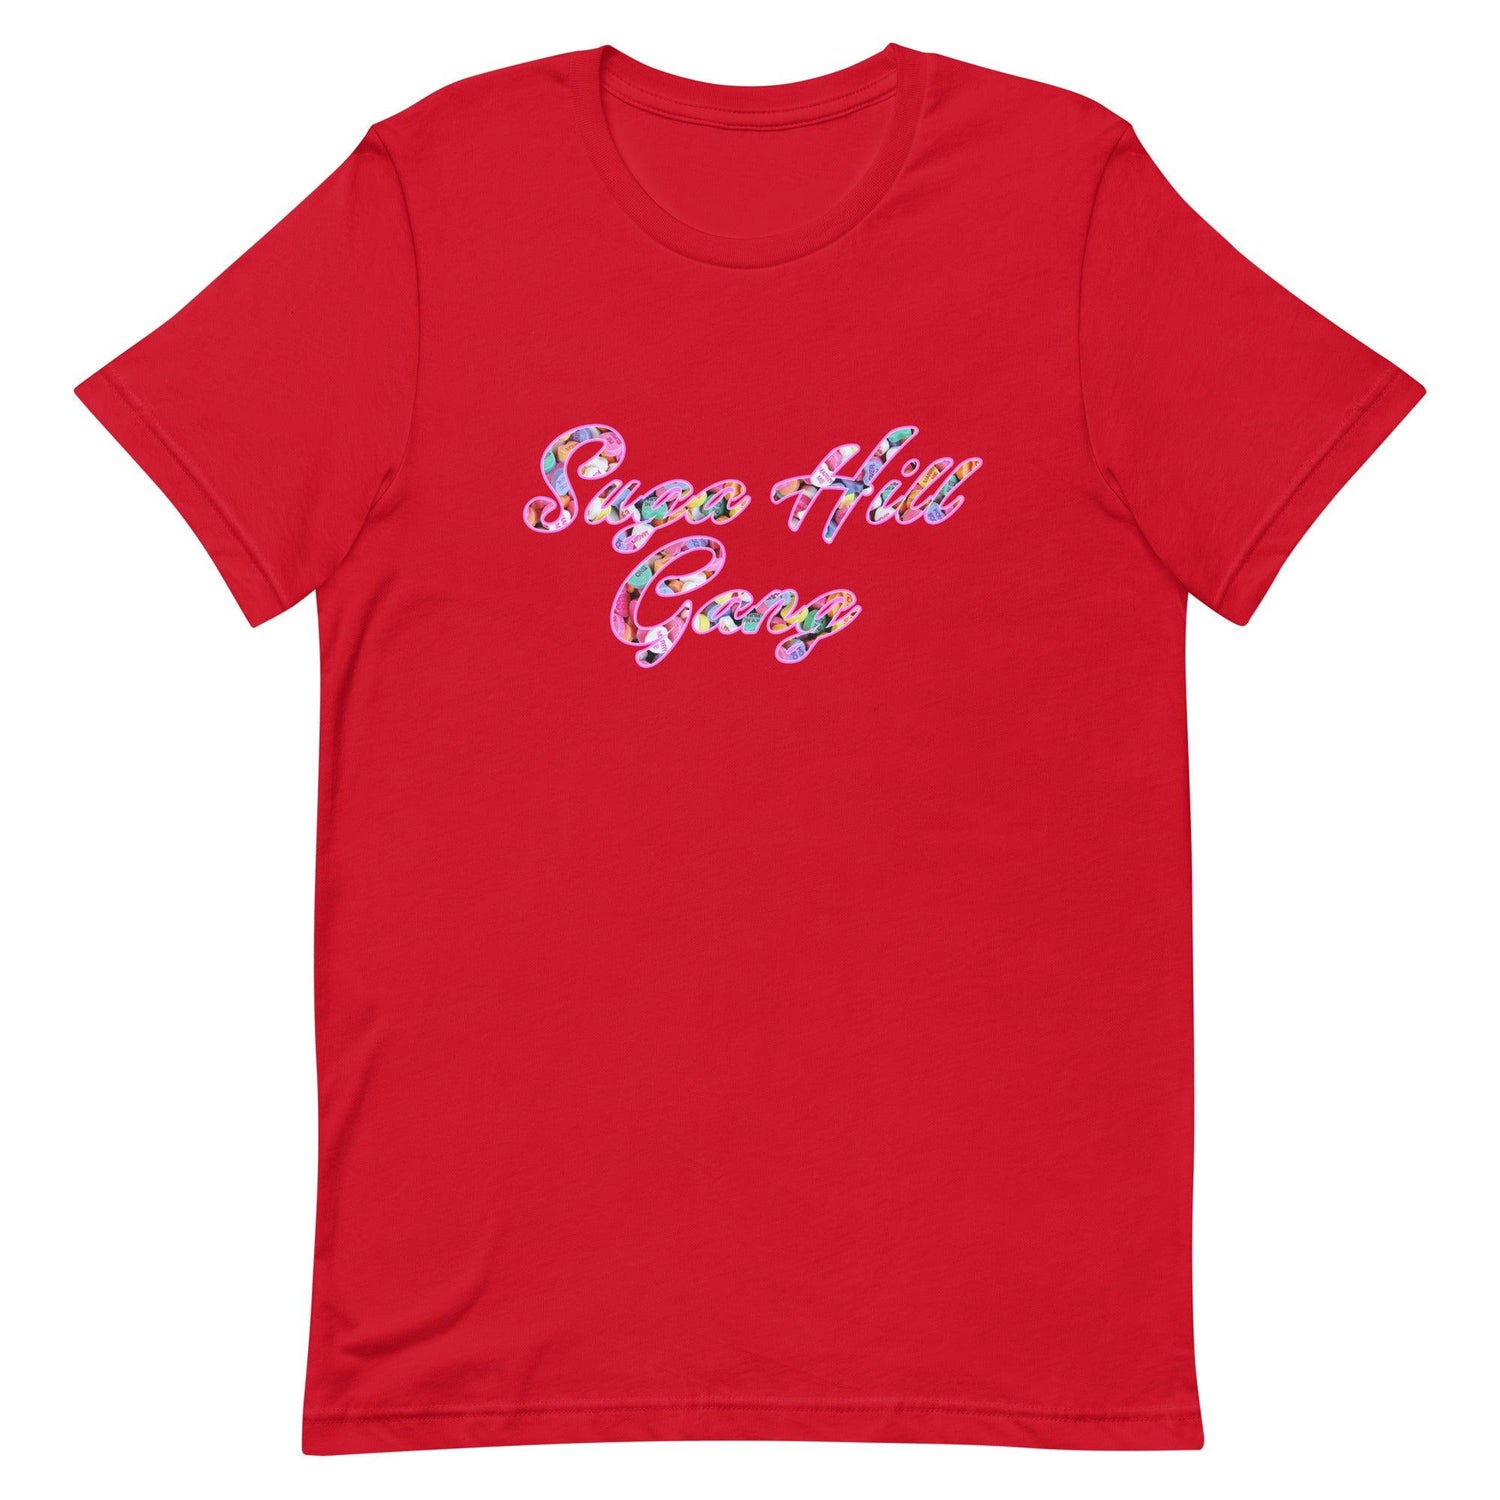 Jyaire Hill "Signature" t-shirt - Fan Arch